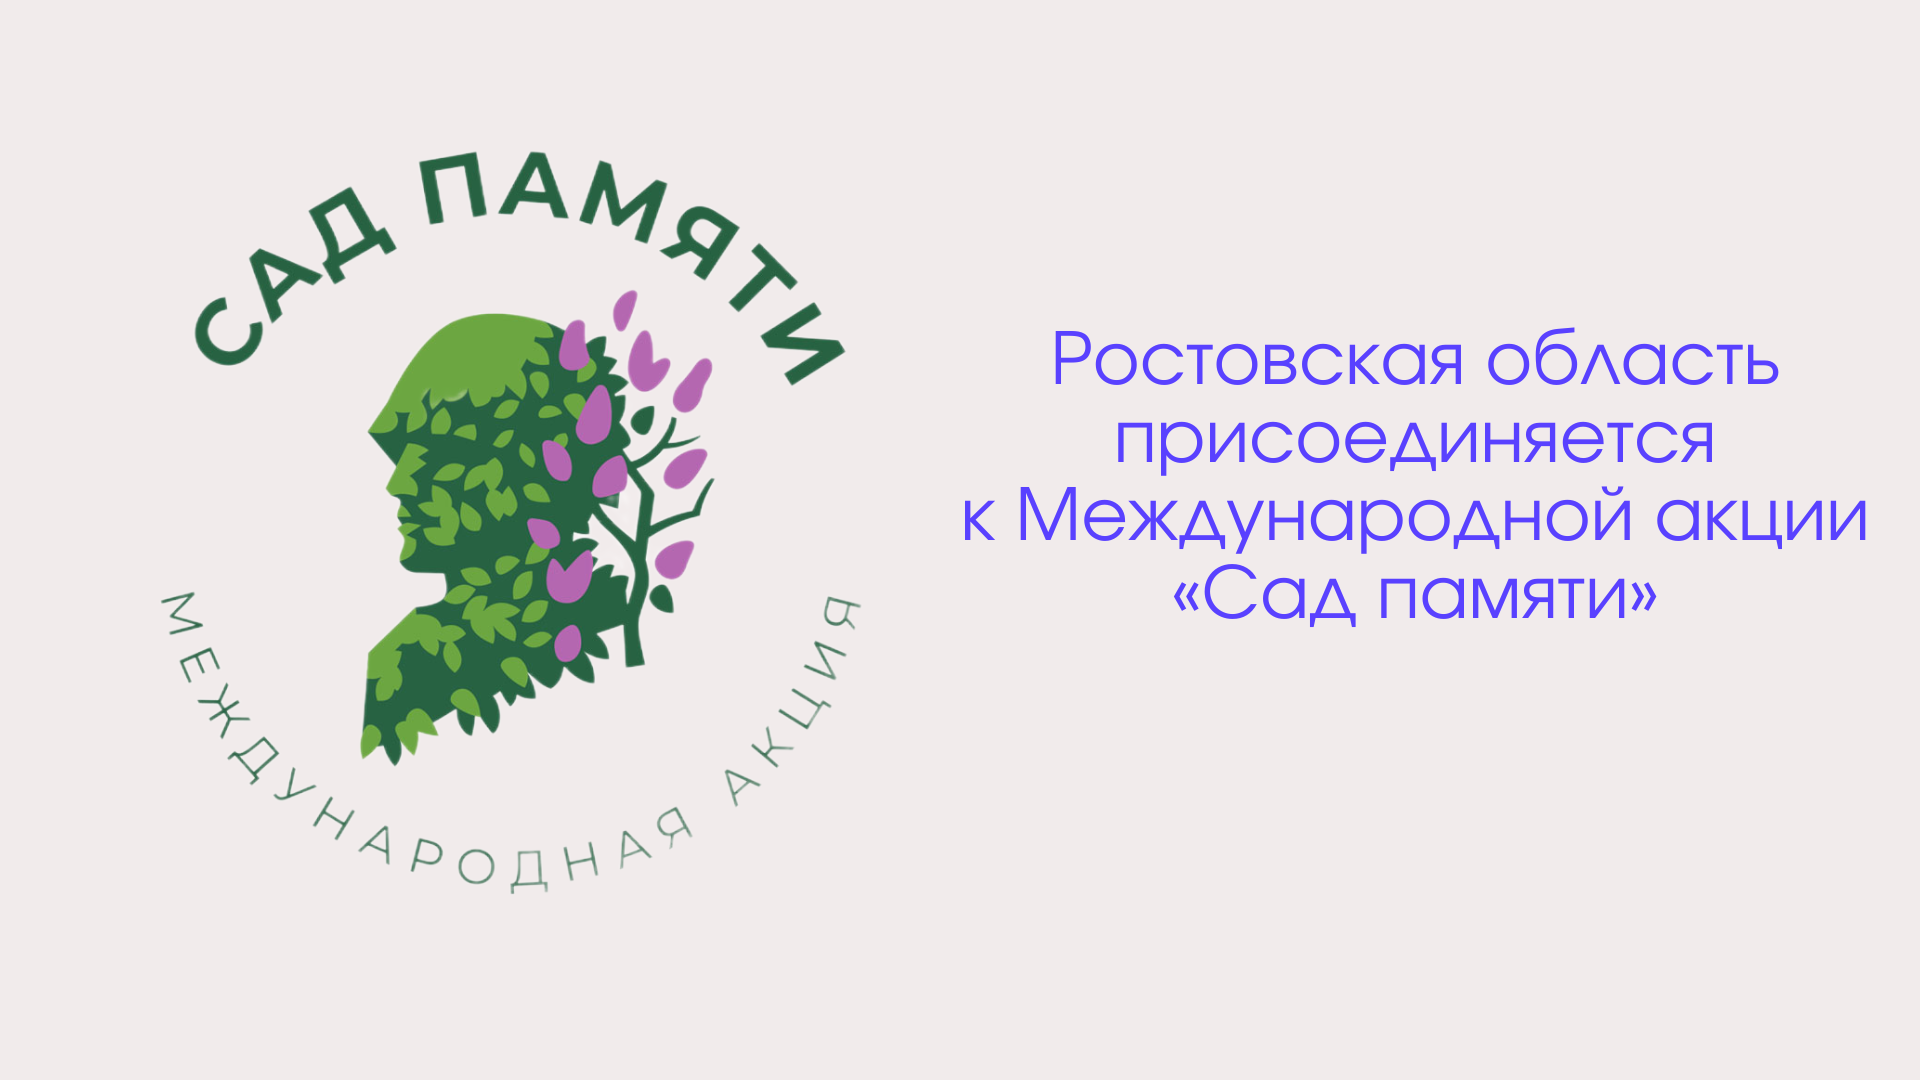 Ростовская область присоединяется к Международной акции «Сад памяти»